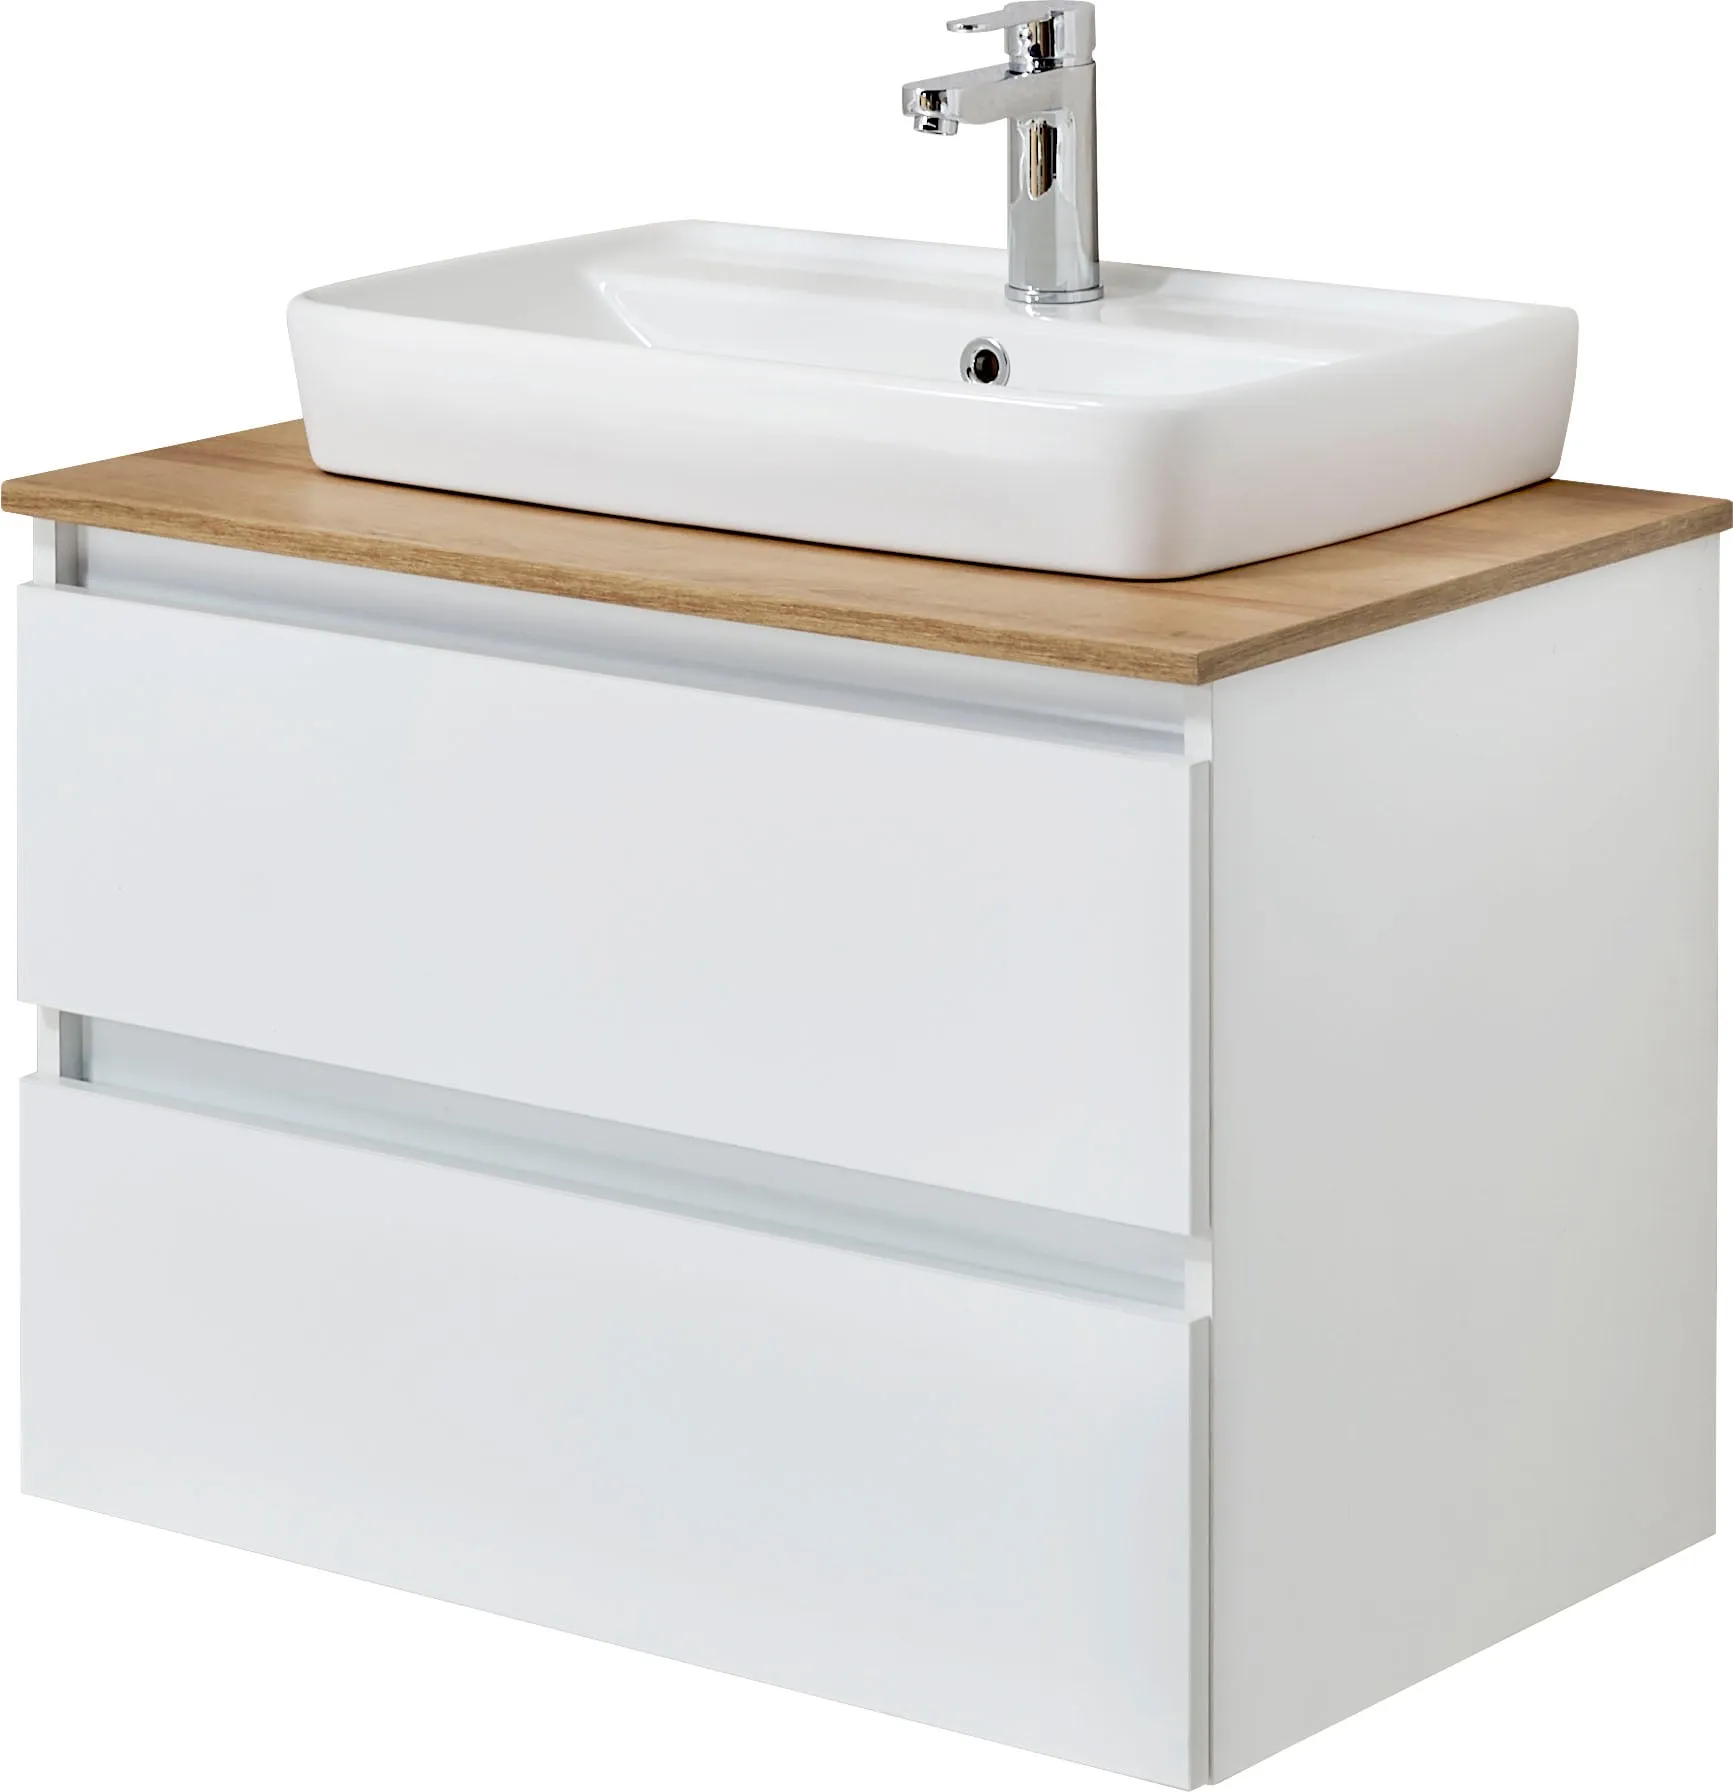 Waschtisch SAPHIR "Quickset 360 Waschplatz mit Keramik-Aufsatzbecken, wandhängend" Waschtische weiß (weiß glanz, glanz) Waschtische Waschtischplatte, 78 cm breit, Weiß Glanz, 2 Schubladen